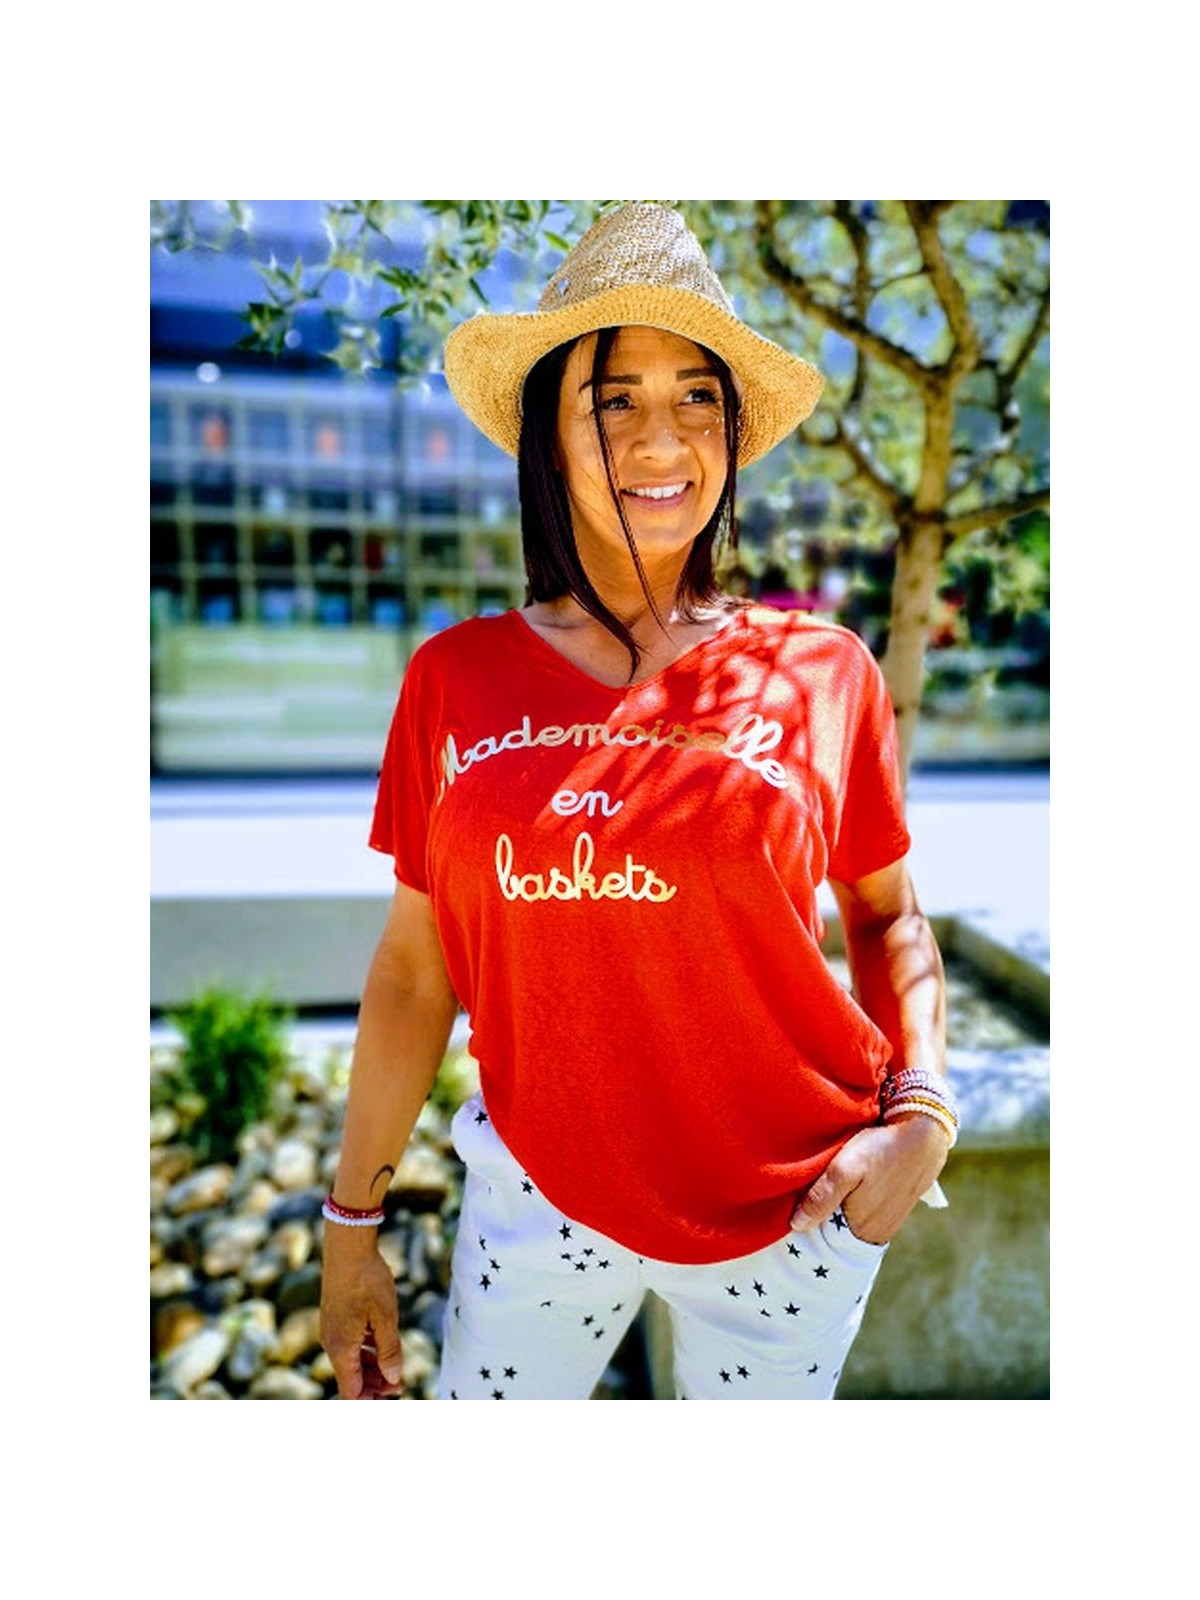 T.shirt mademoiselle en basket rouge avec inscriptions dorée l 1 vue de face l Tilleulmenthe boutique de mode femme